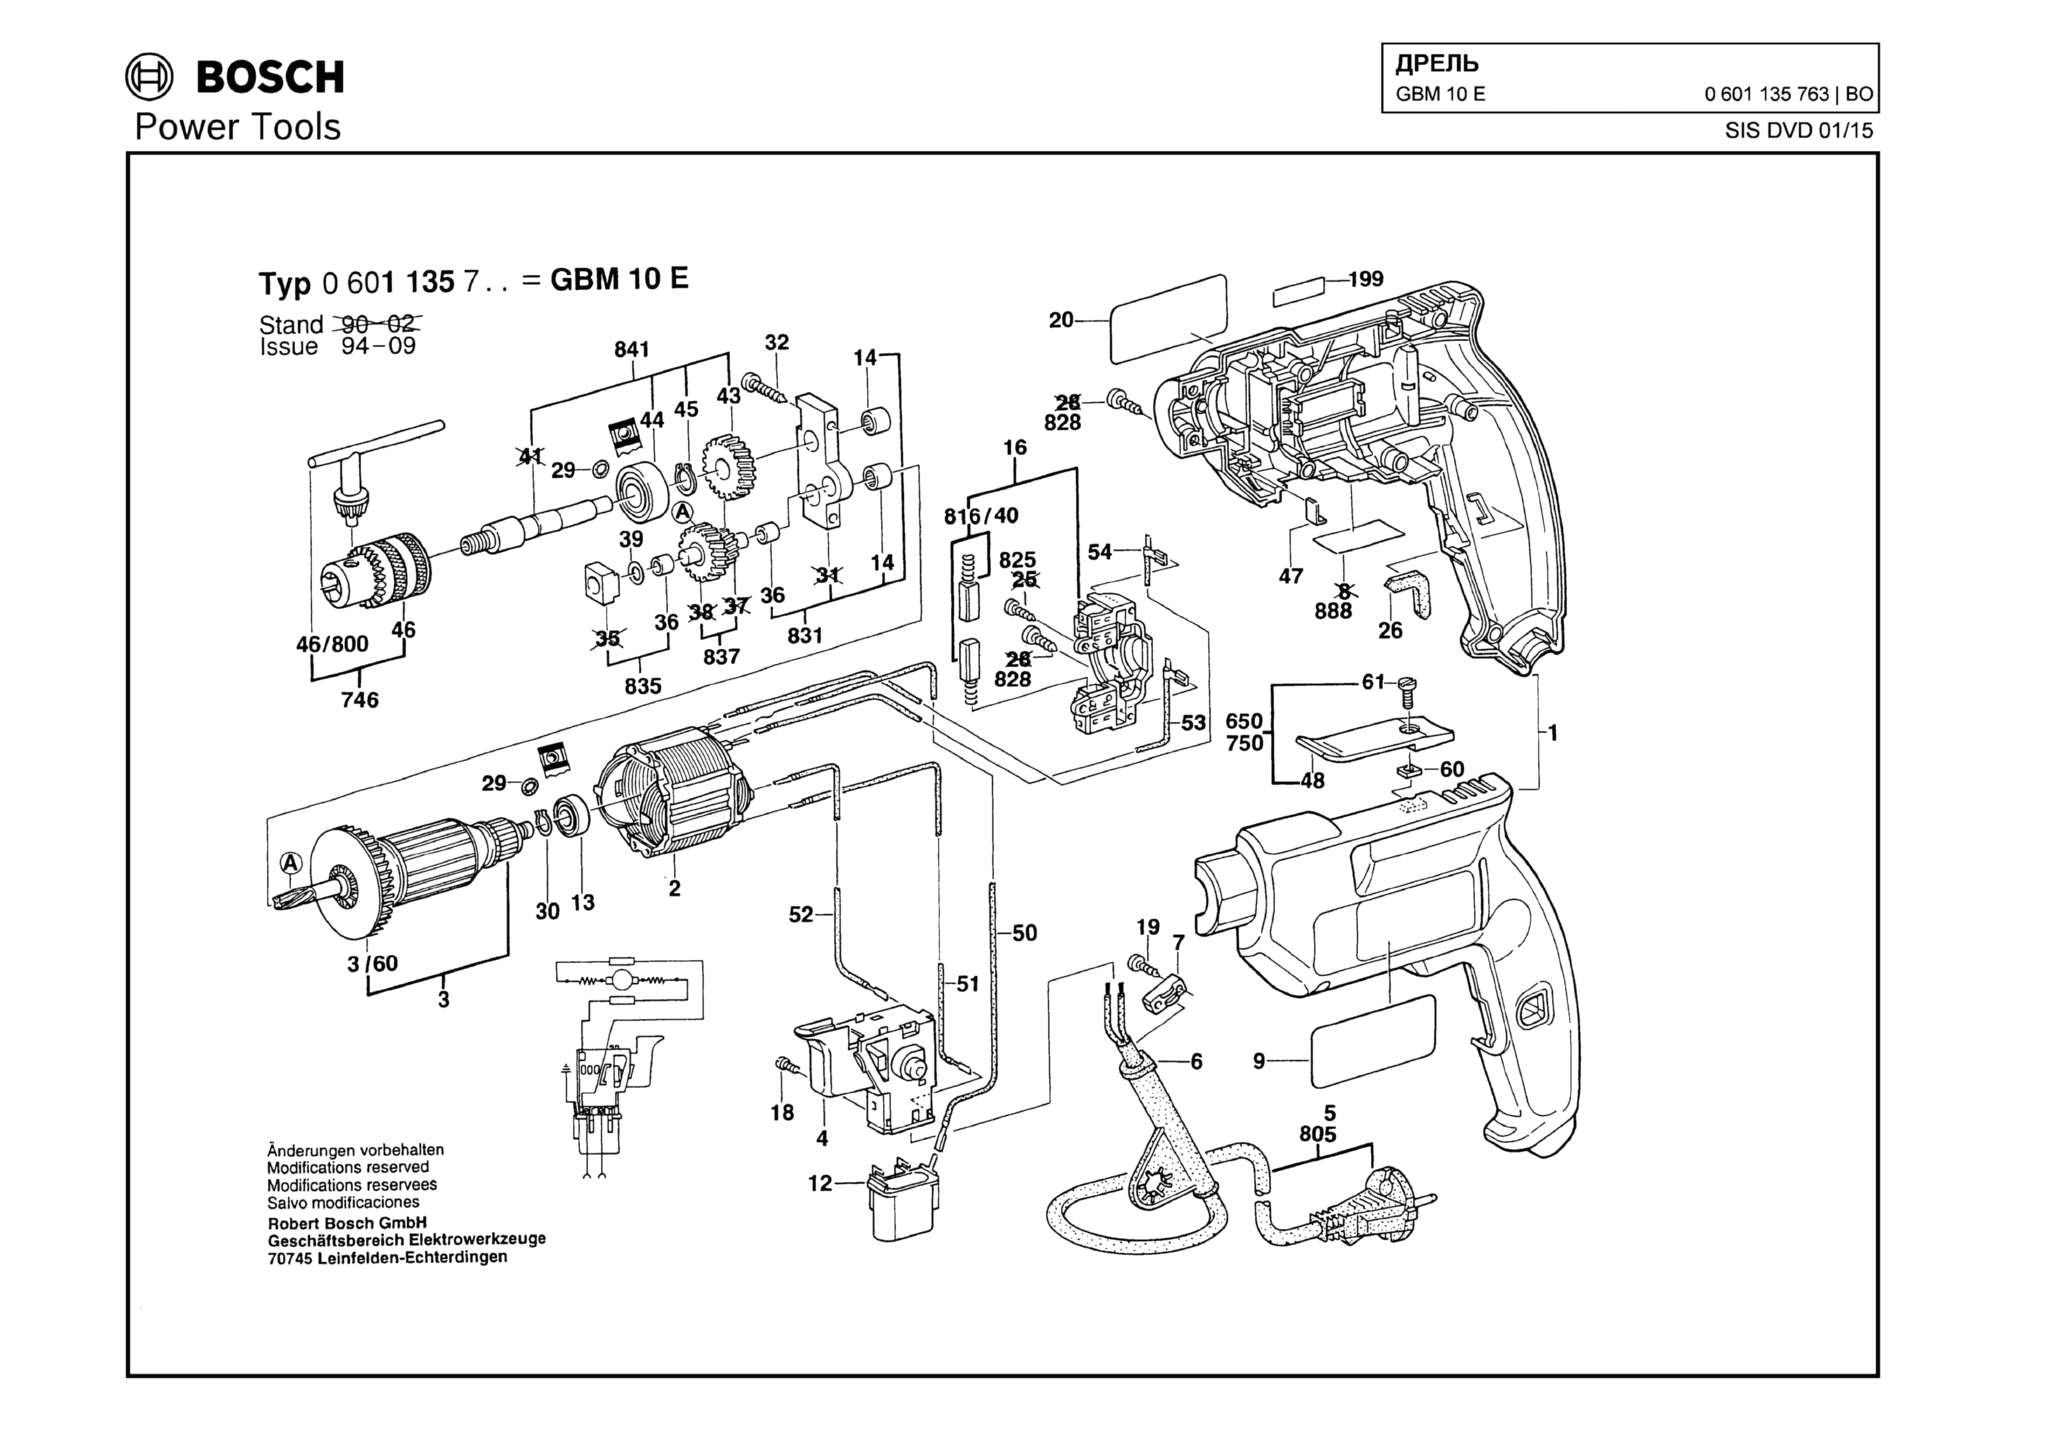 Запчасти, схема и деталировка Bosch GBM 10 E (ТИП 0601135763)